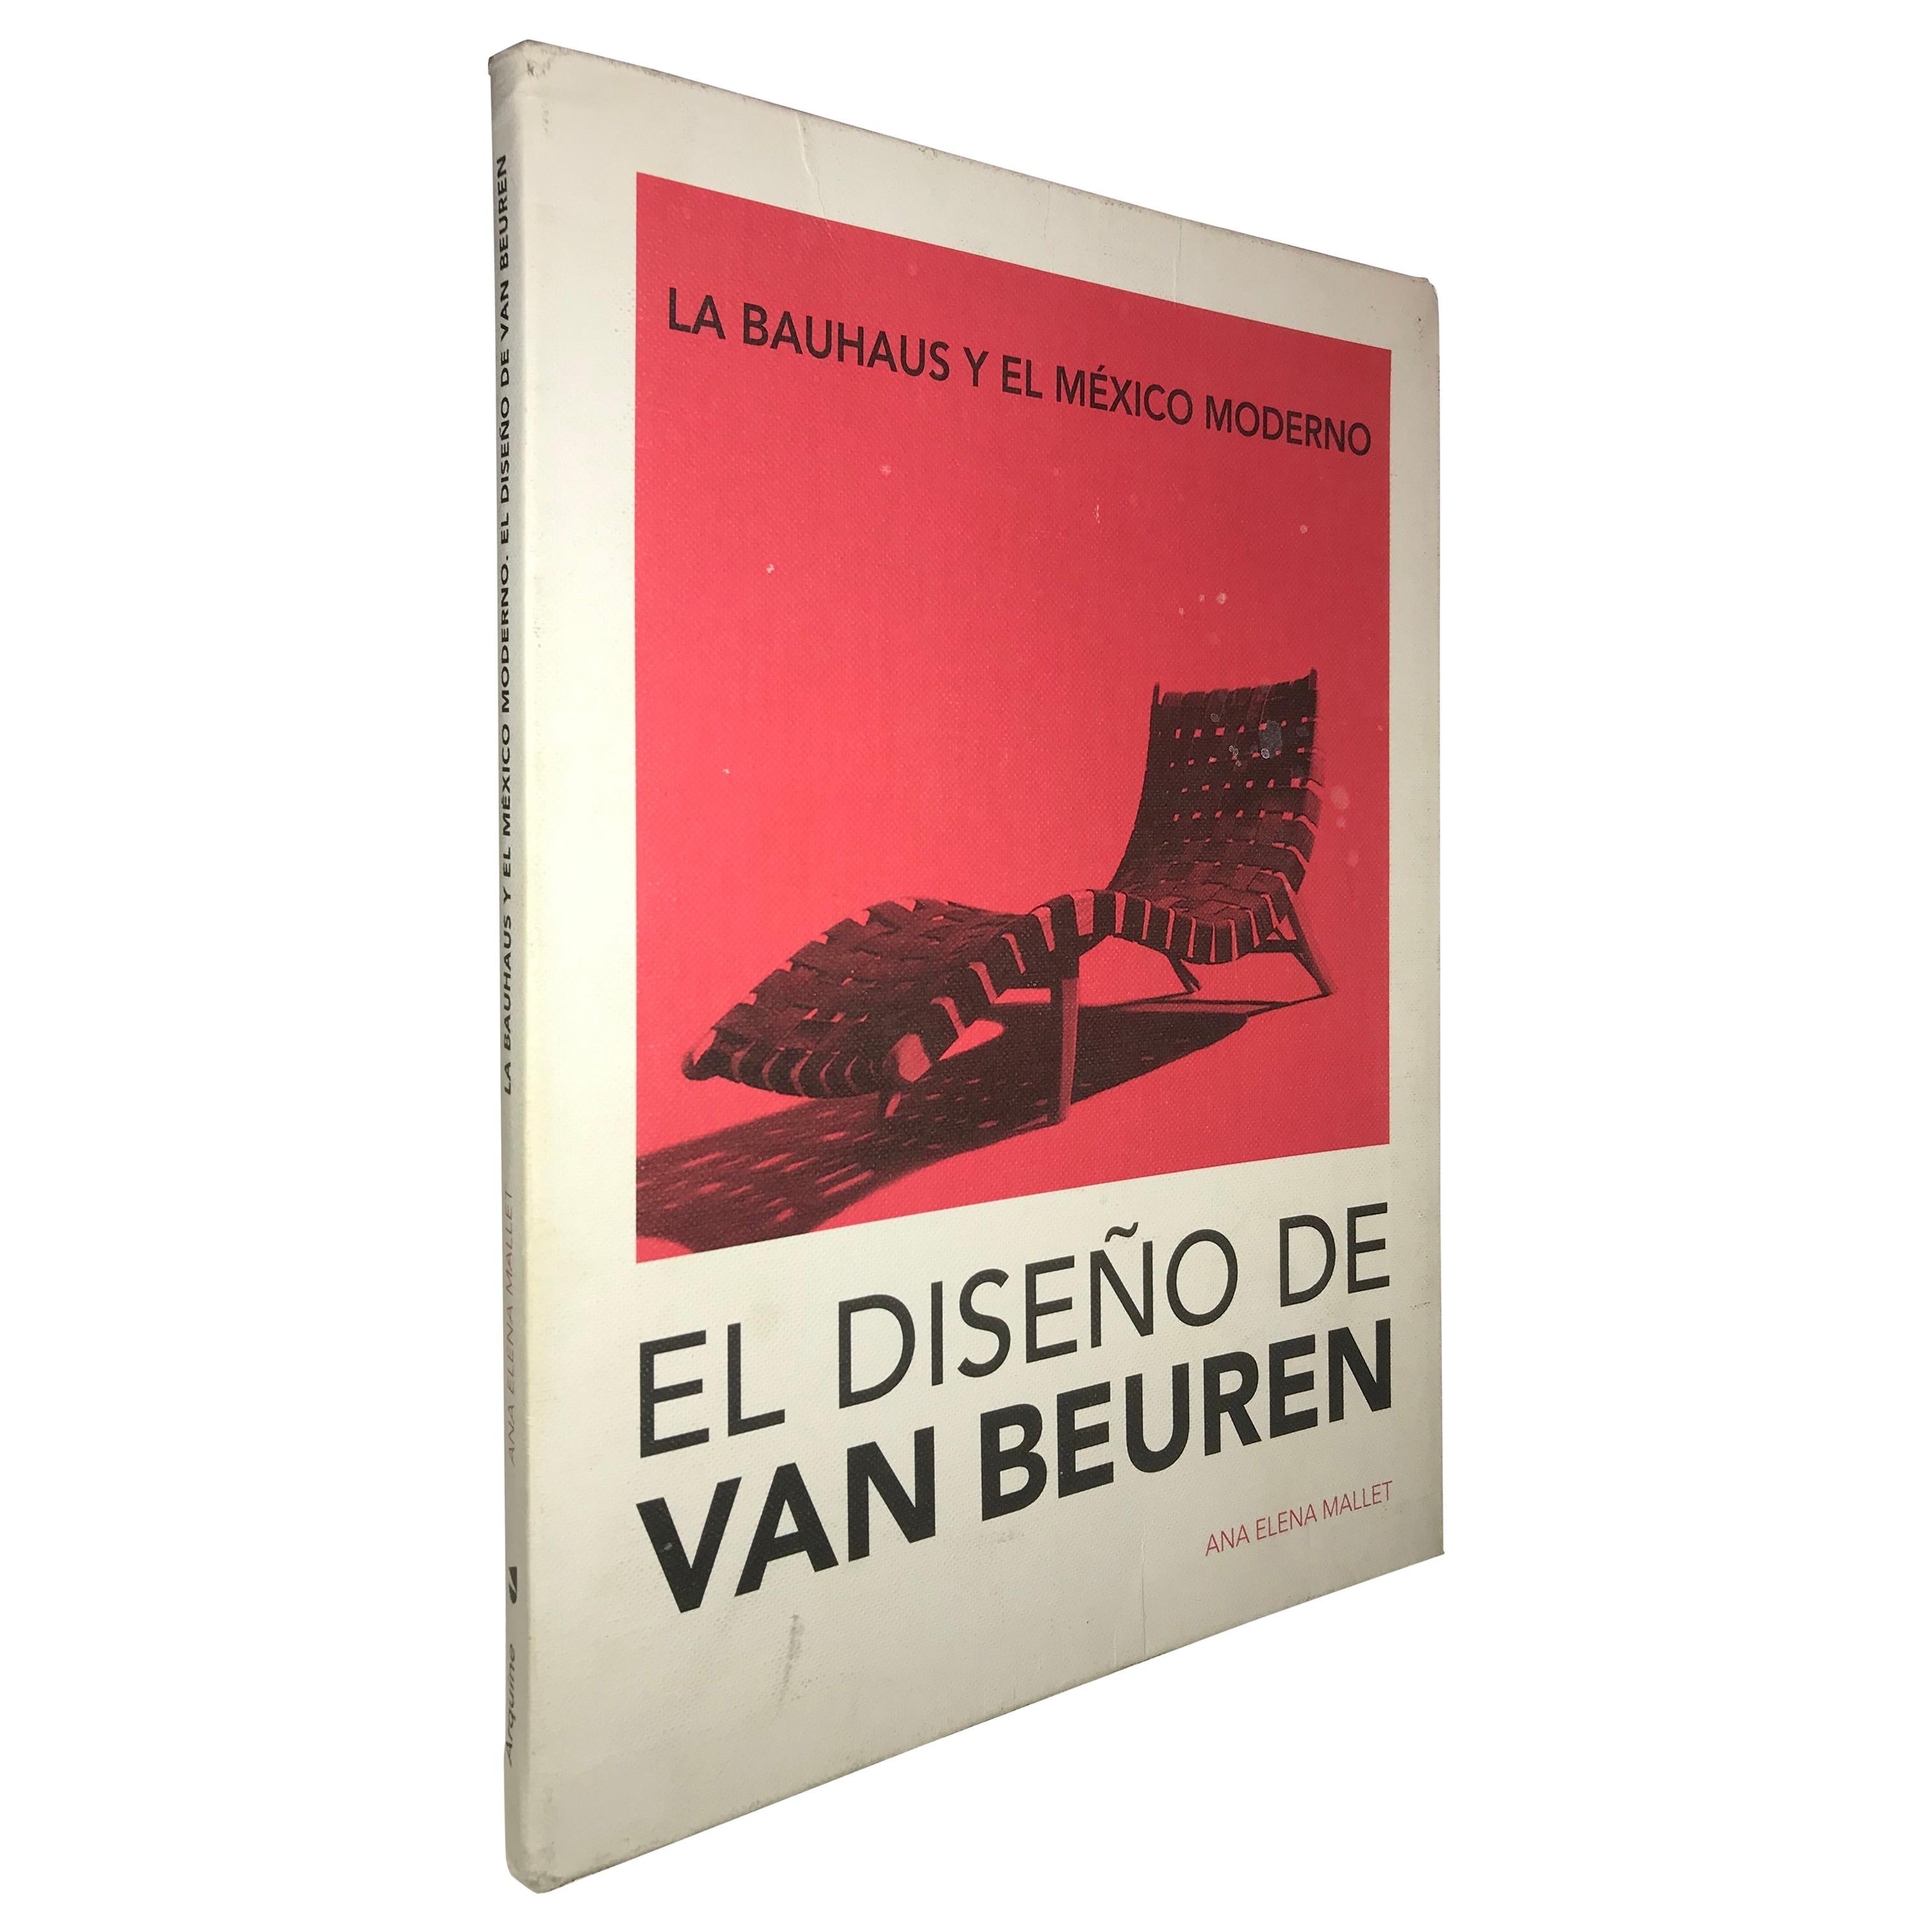 La Bauhaus y el México Moderno, EL Diseño de Van beuren Book by Ana Elena Mallet For Sale